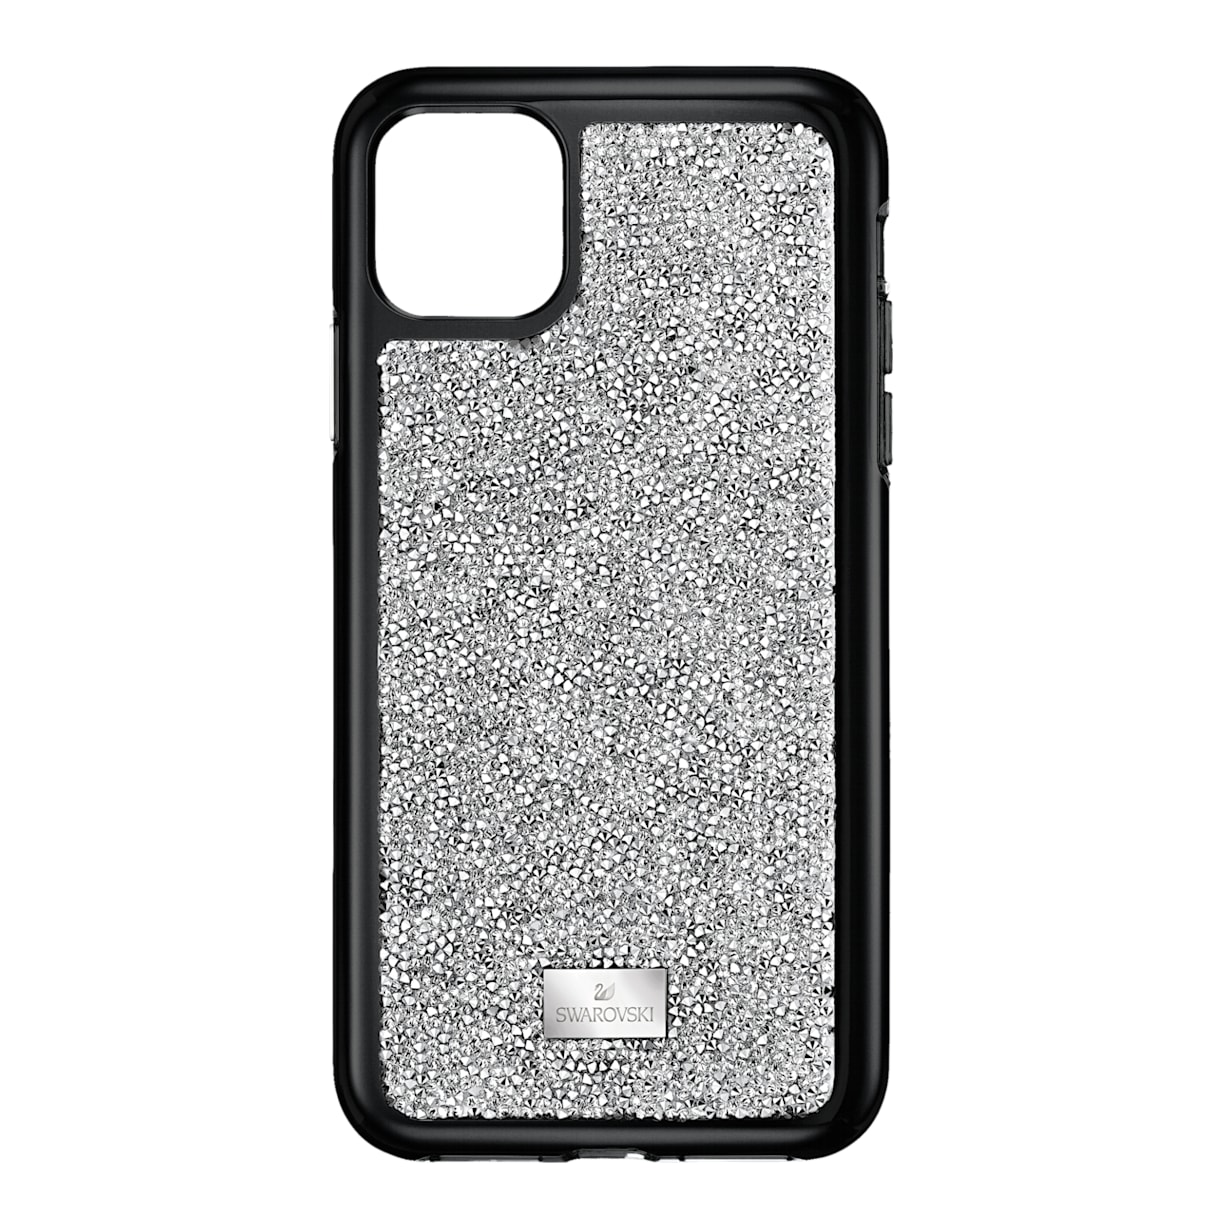 Custodia per smartphone con bordi protettivi Glam Rock, iPhone® 11 Pro, tono argentato